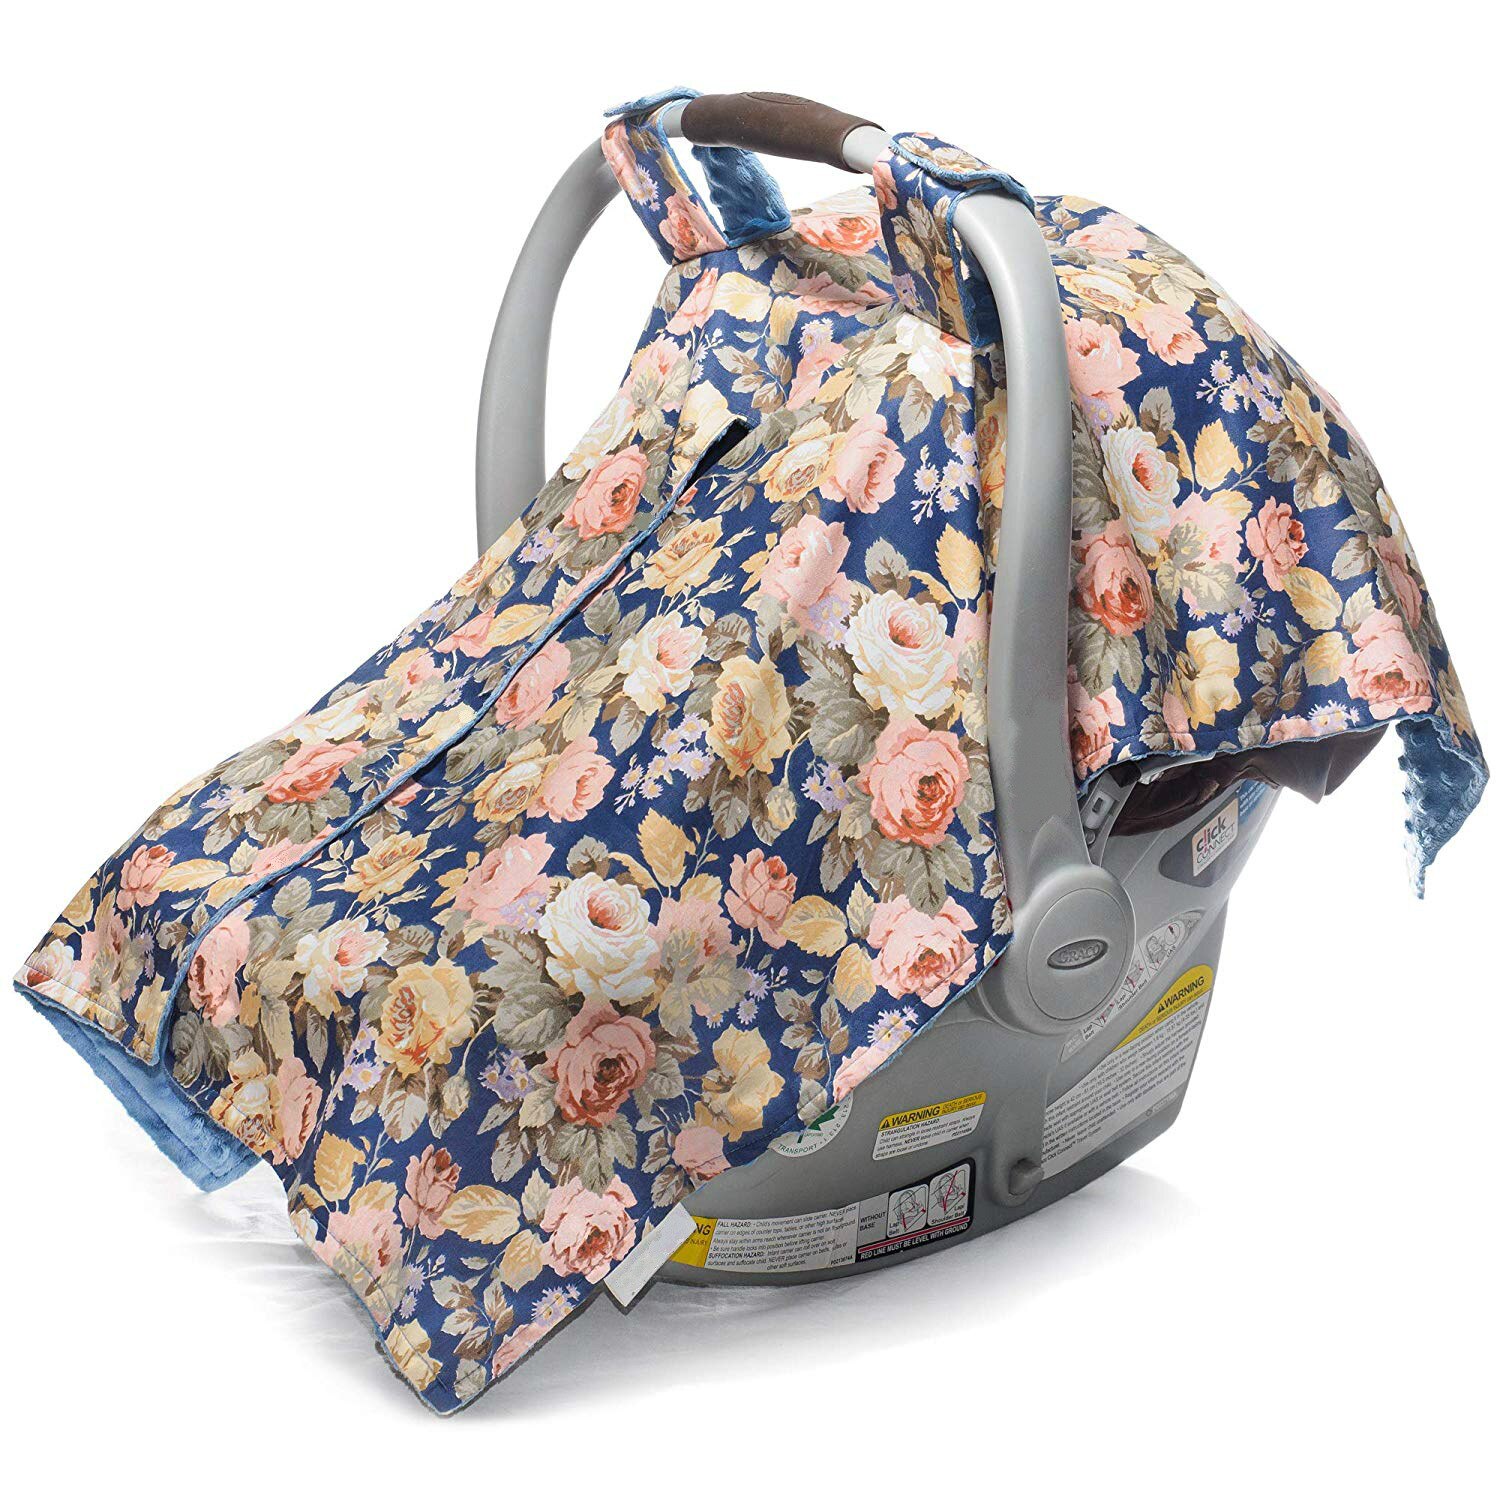 Baby autostol betræk baby foder indkøbskurv betræk bomuld klud høj stol betræk til babyer amme amme betræk: 1